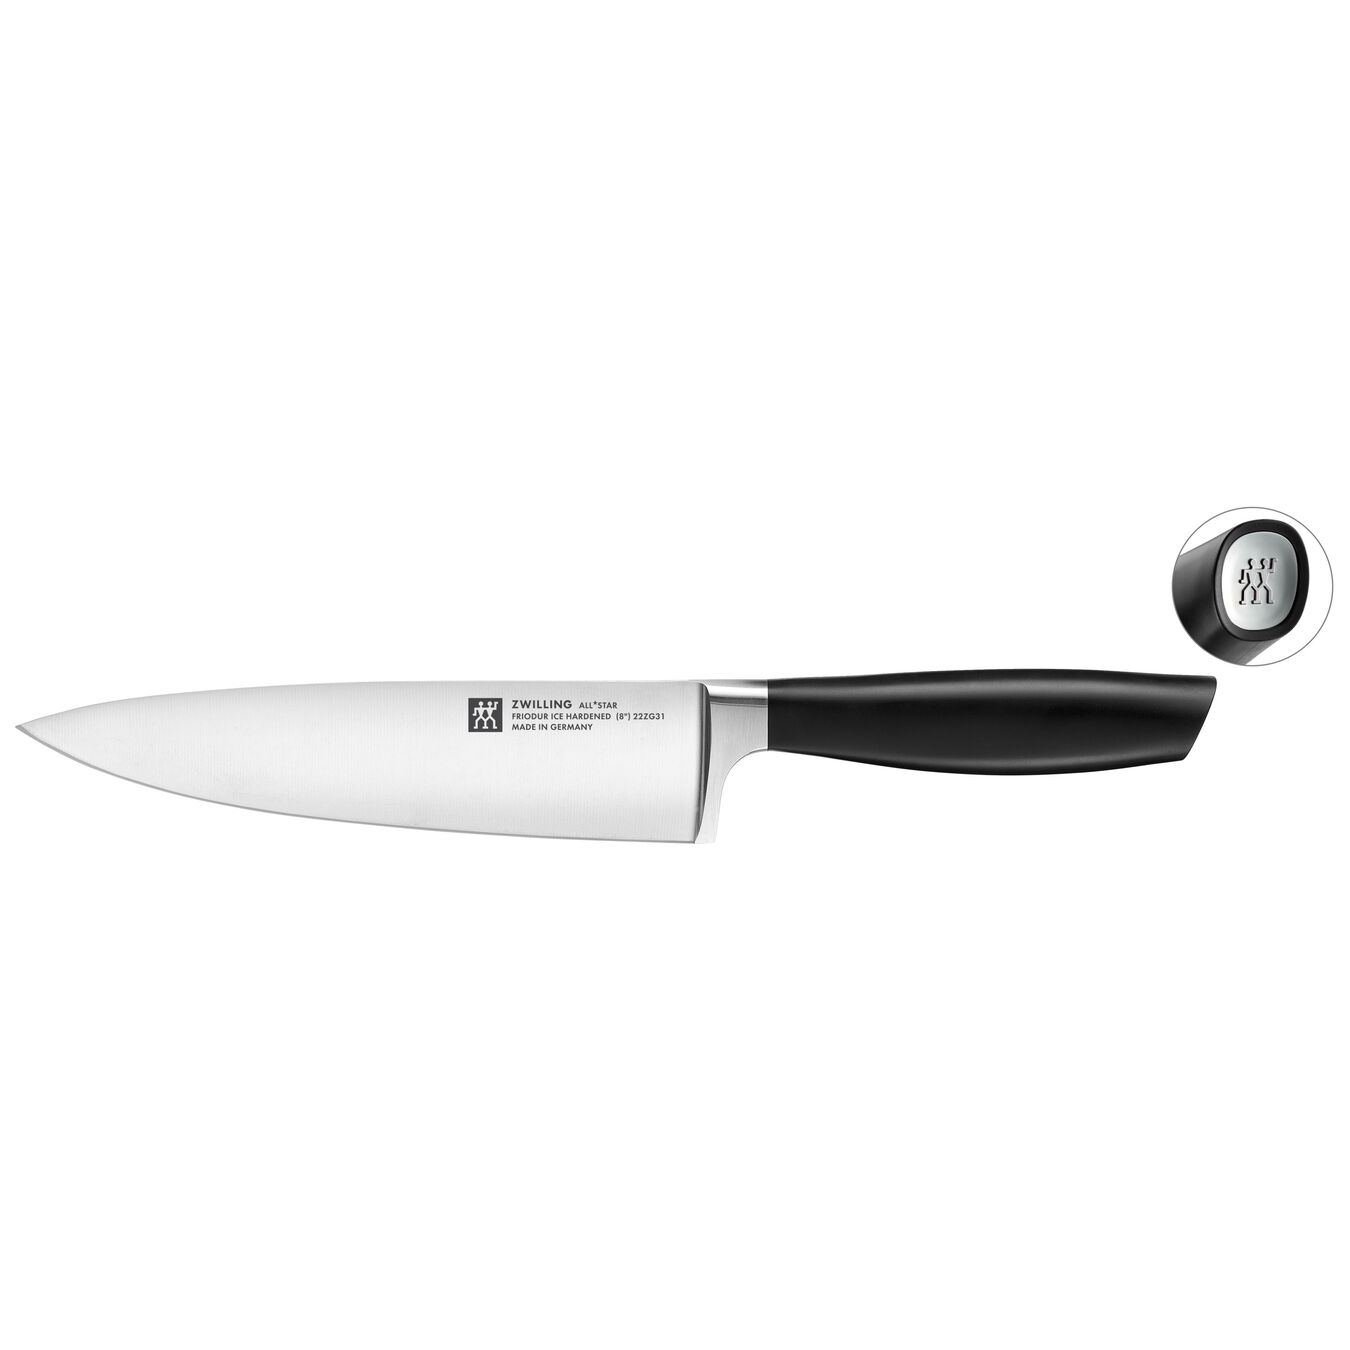 Cuchillo de chef 20 cm, Plata,,large 1